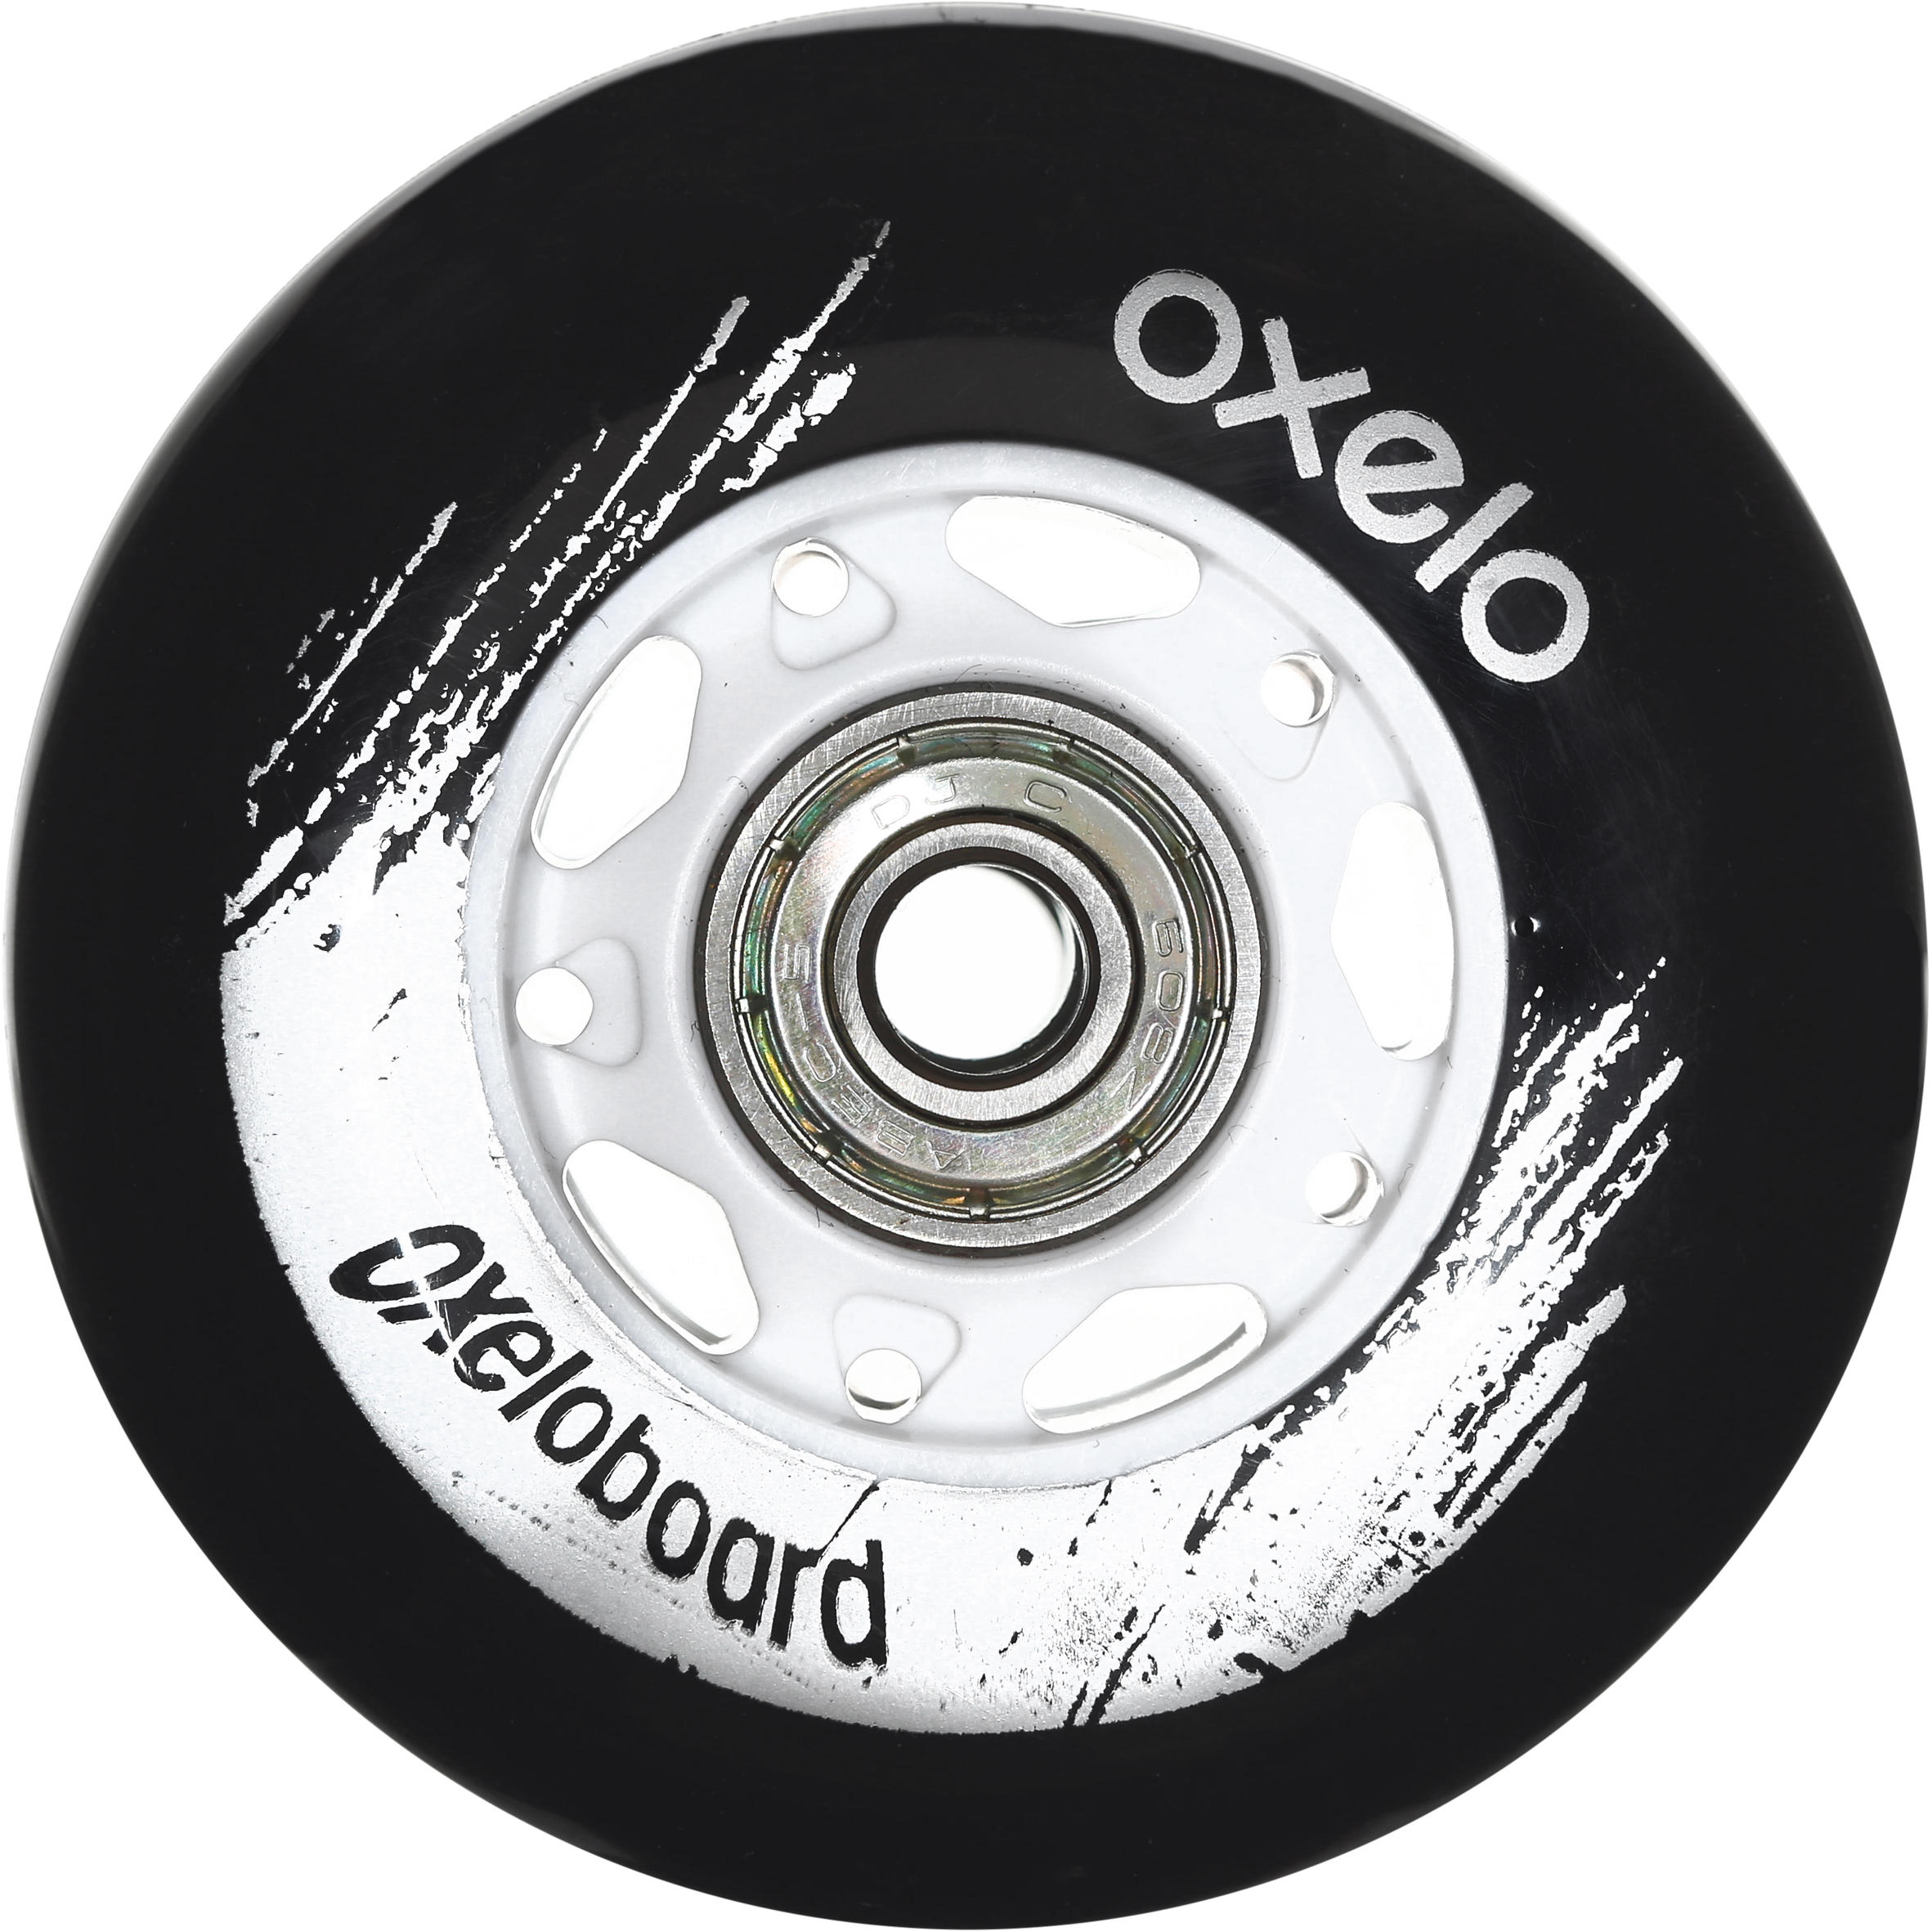 oxelo waveboard wheels